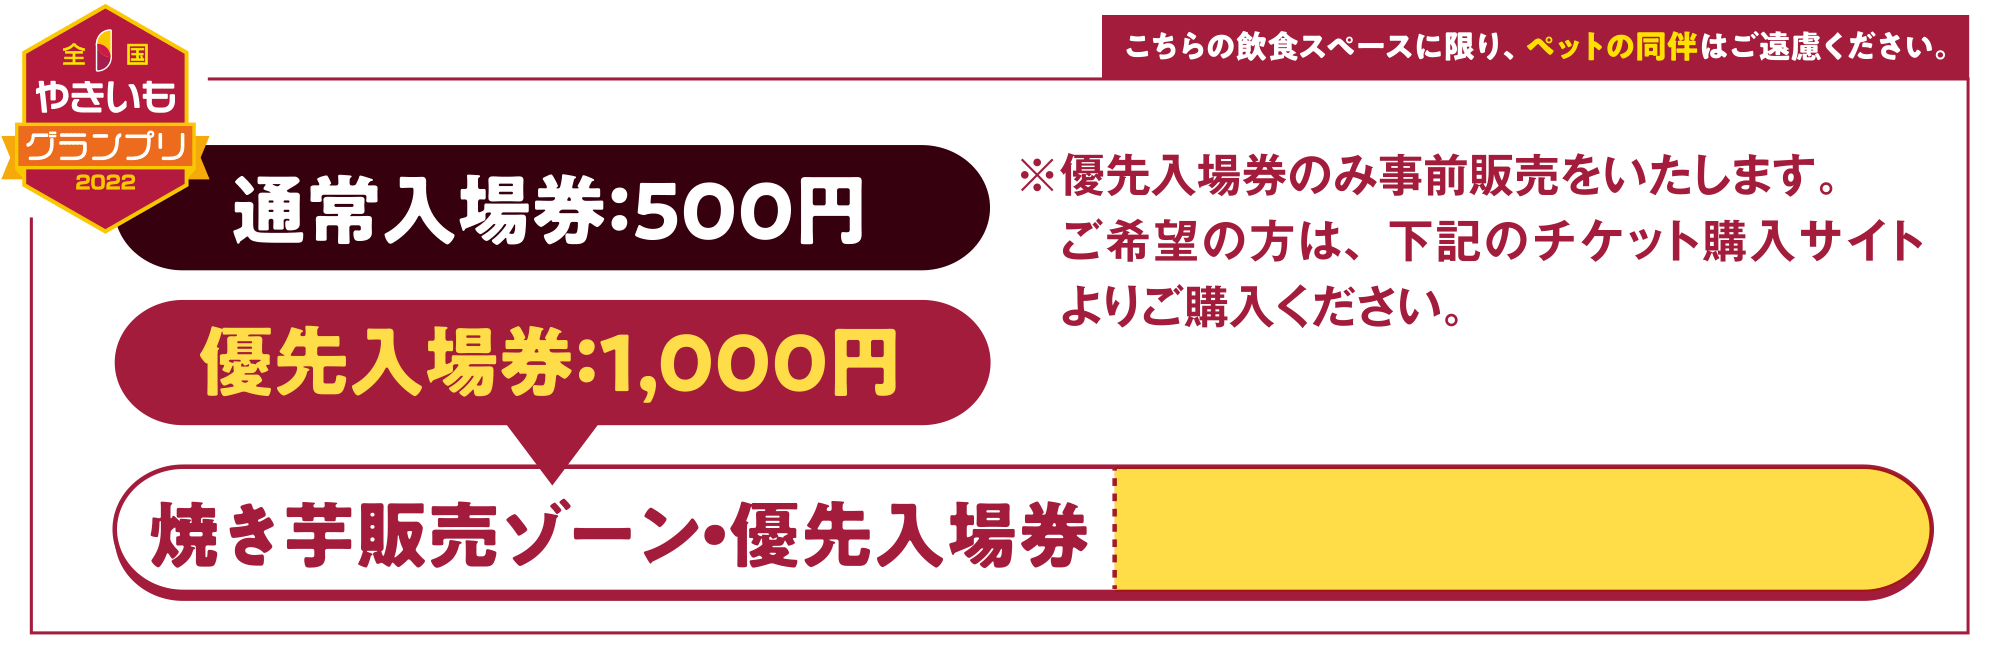 通常入場券５００円優先入場券１０００円焼き芋販売ゾーン優先入場券のご購入はこちら。※優先入場券のみ事前販売をいたします。　ご希望の方は指定のチケット購入サイトより　ご購入ください。　詳細は、ホームページをご確認ください。